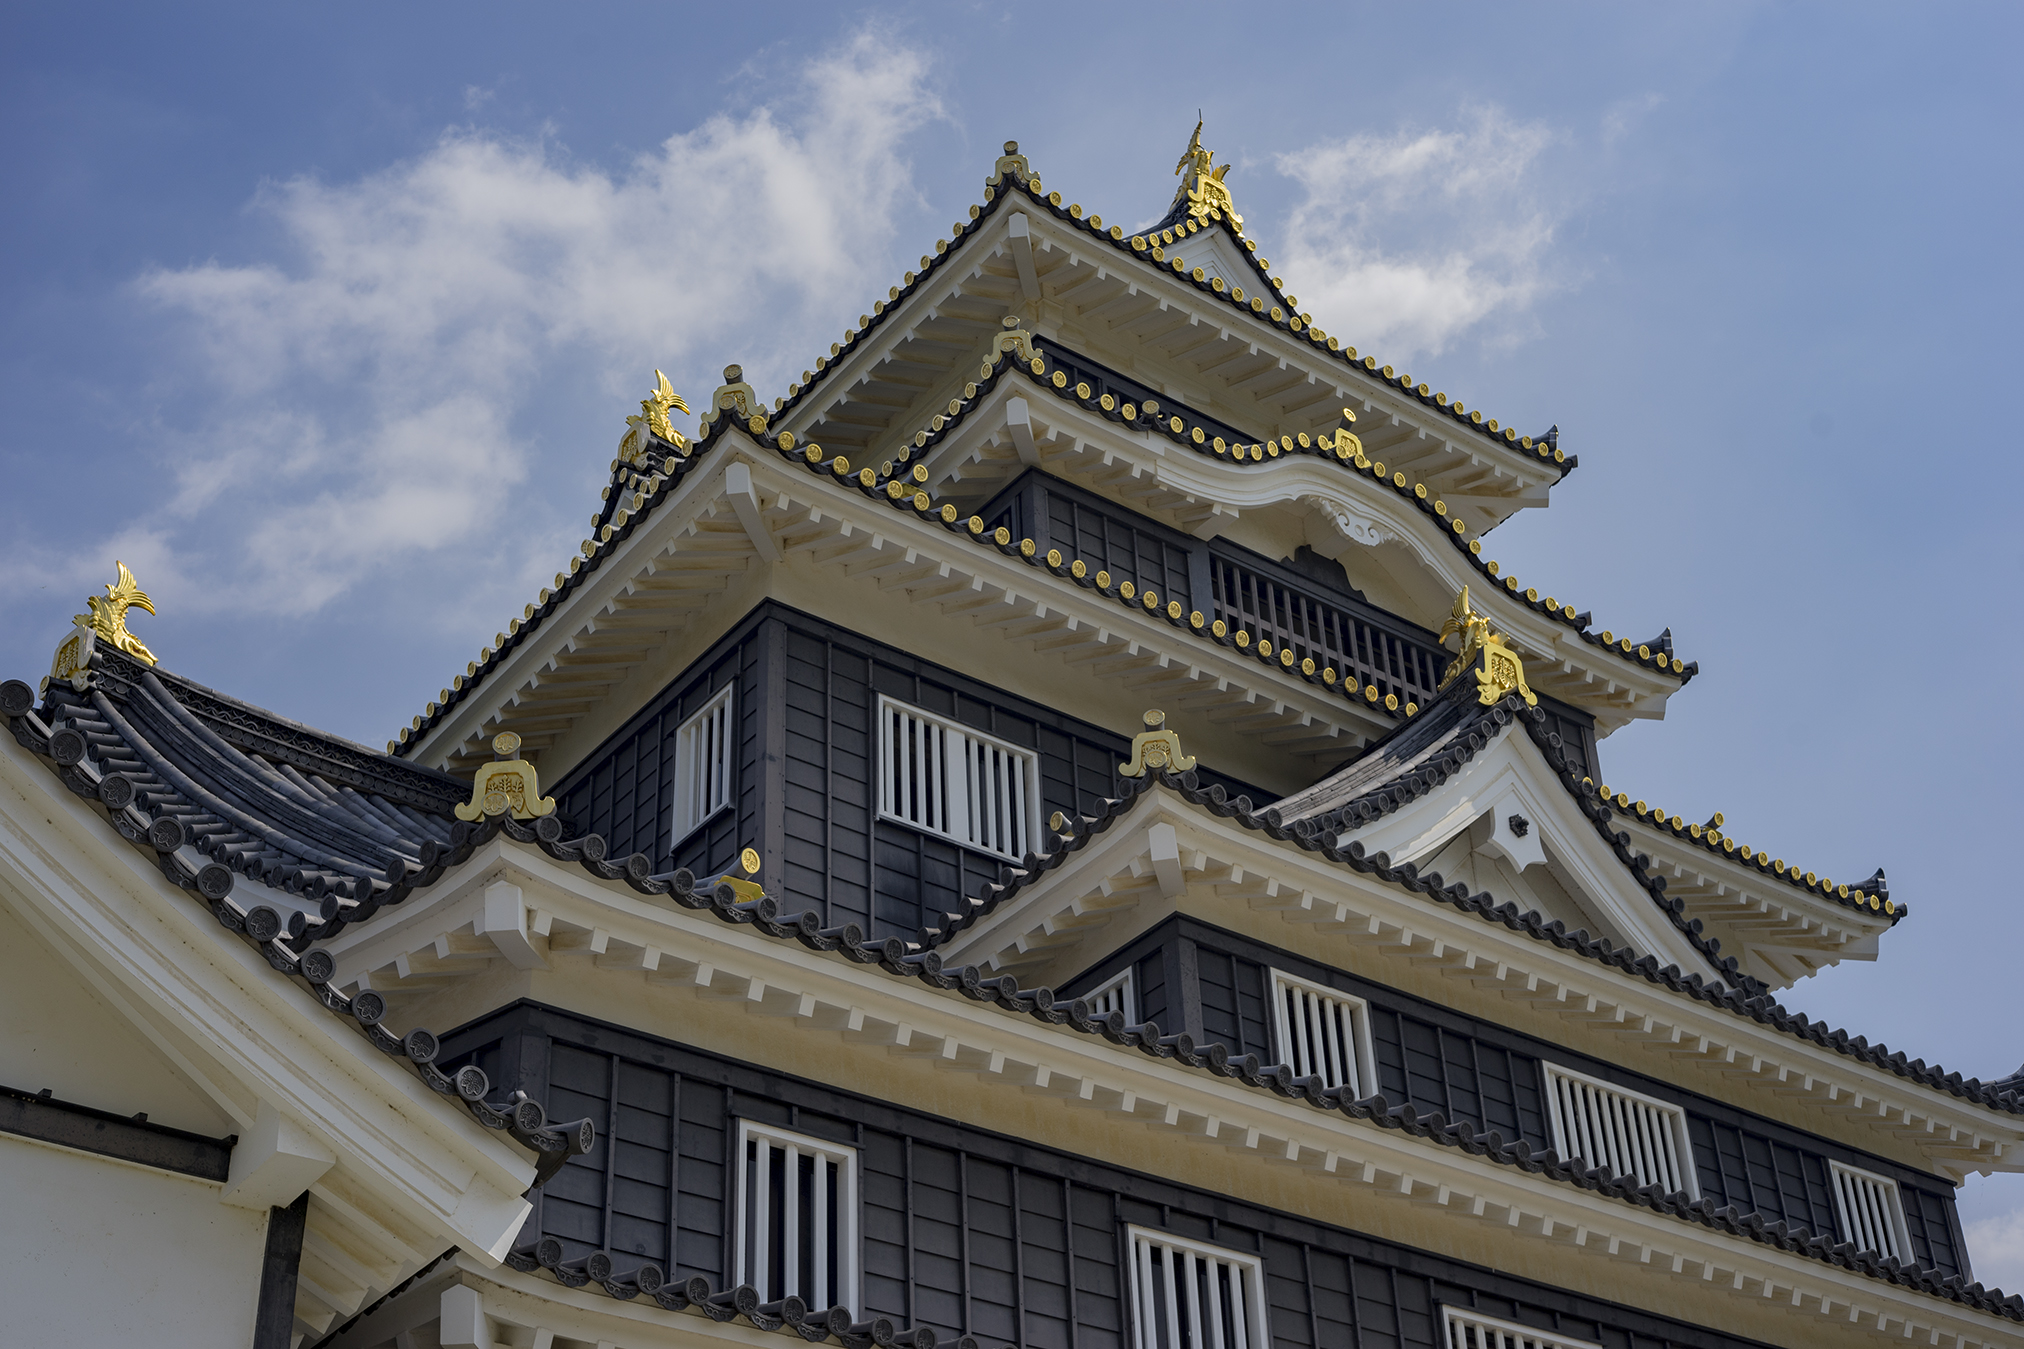 日本100名城「岡山城」は『川面に映える漆黒の城』 | 旅カメラ